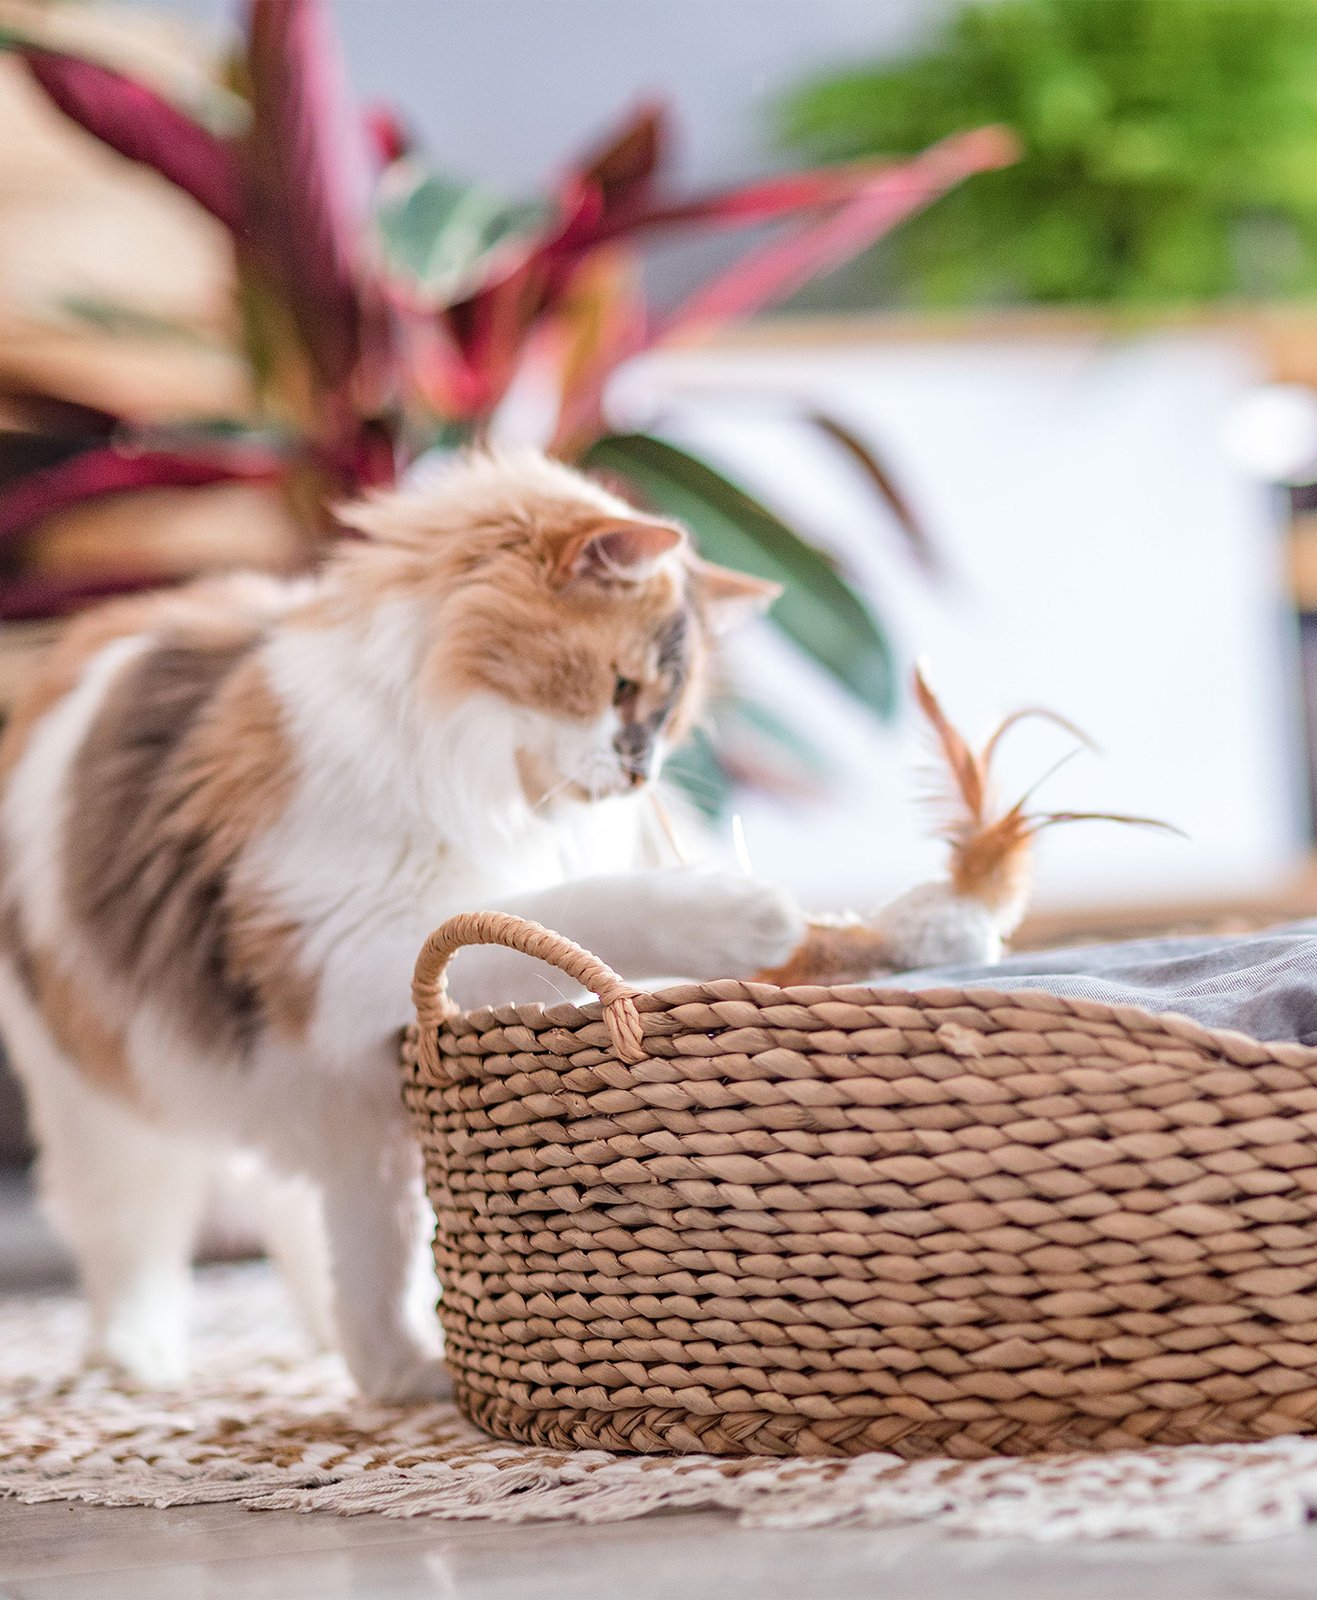 Un chat qui joue avec son jouet dans son panier en osier